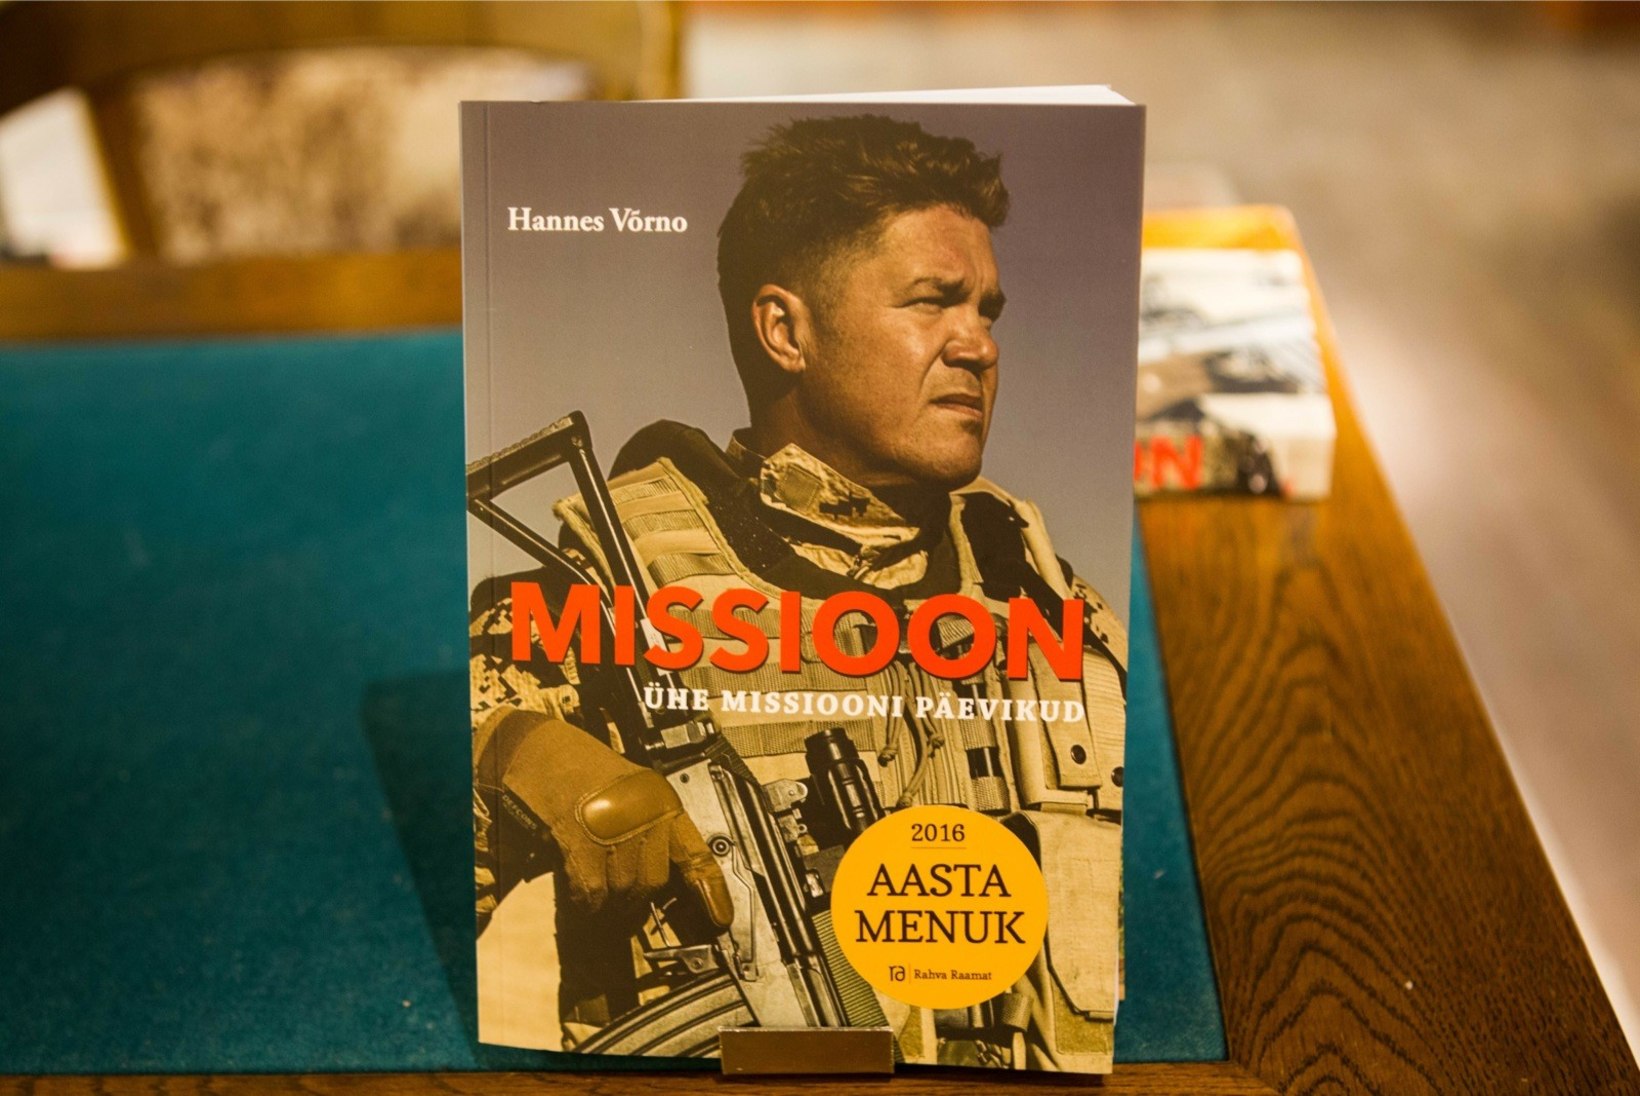 FOTOD | Hannes Võrno jagas oma sõjamissioonide raamatule autogramme